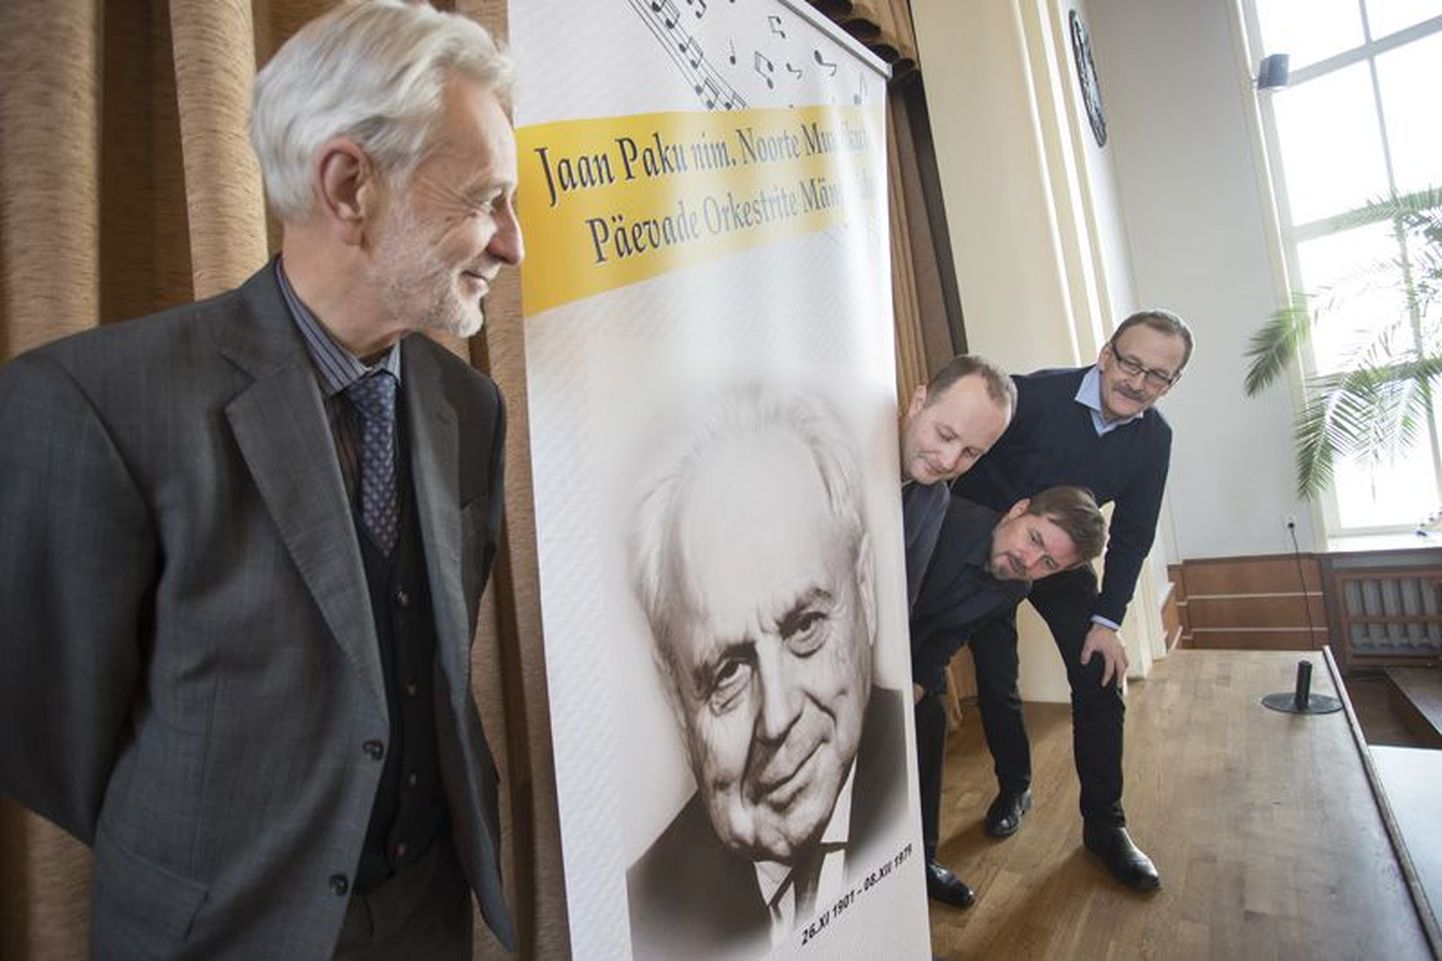 Neli dirigenti Rakveres. Toivo Peäske (vasakult), Villem Peäske, Hando Põldmäe ja Kaido Otsing  panid Jaan Paku päevadel gümnaasiumihoone keelpillimuusikaga elama.